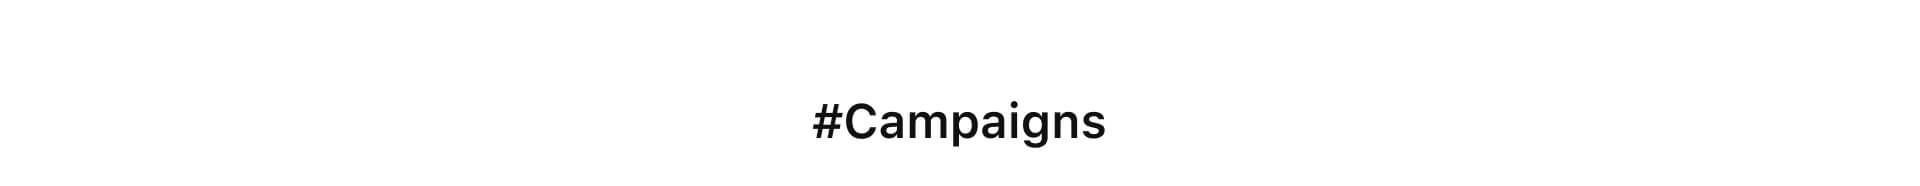 campaigns